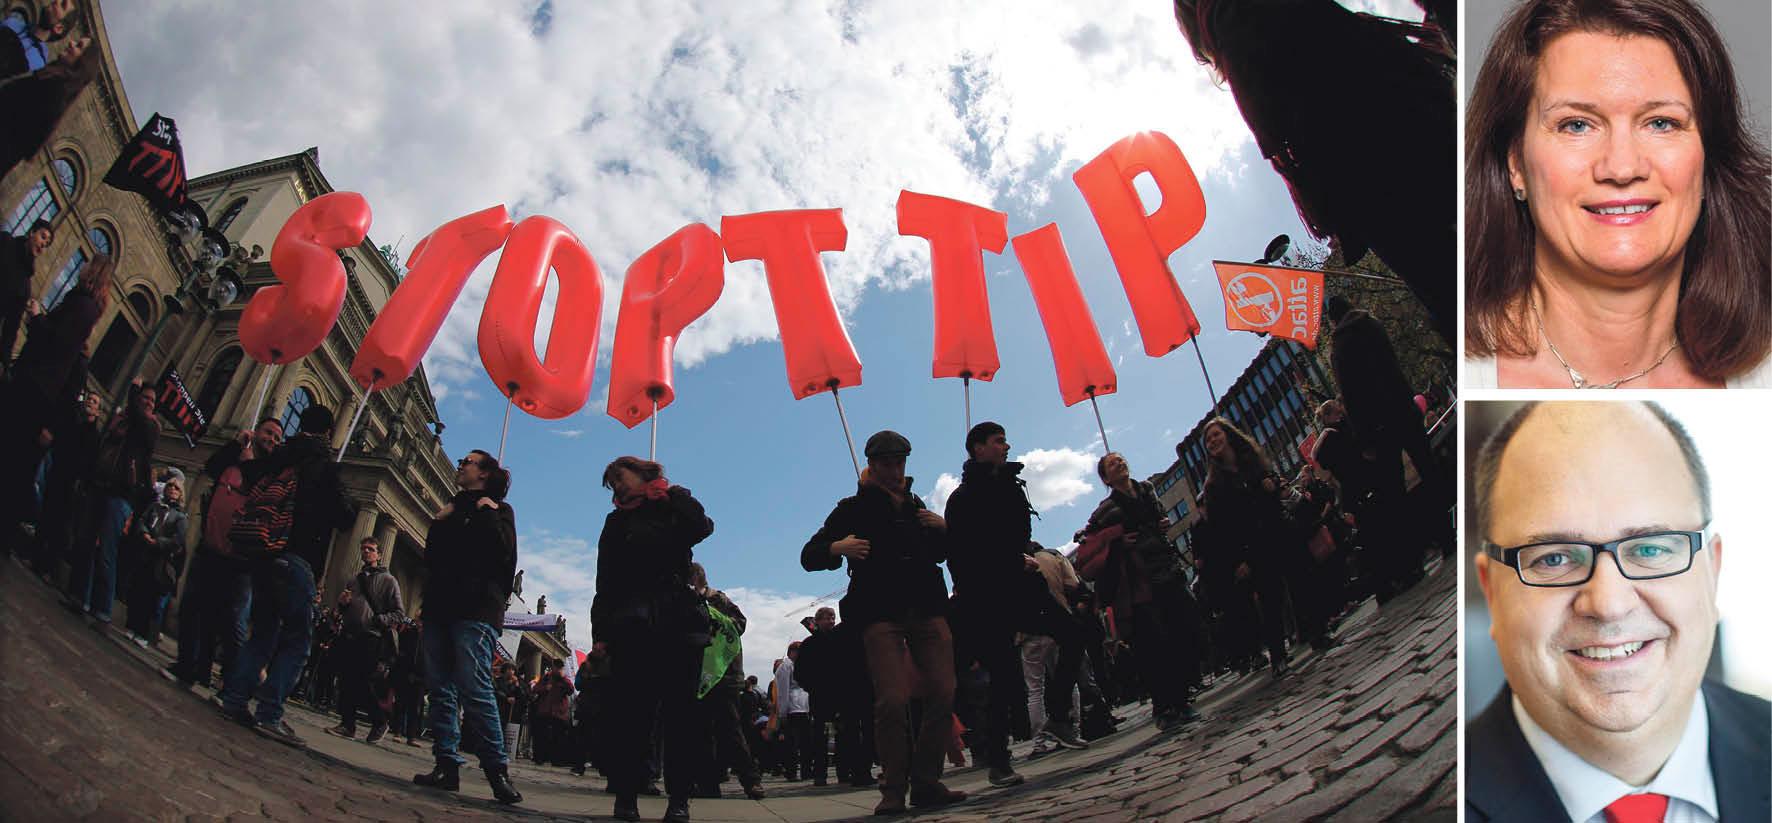 Runt om i Europa har människor protesterat mot TTIP, men att rikta ilskan mot handelsavtalet är inte rätt väg att gå, skriver dagens debattörer.